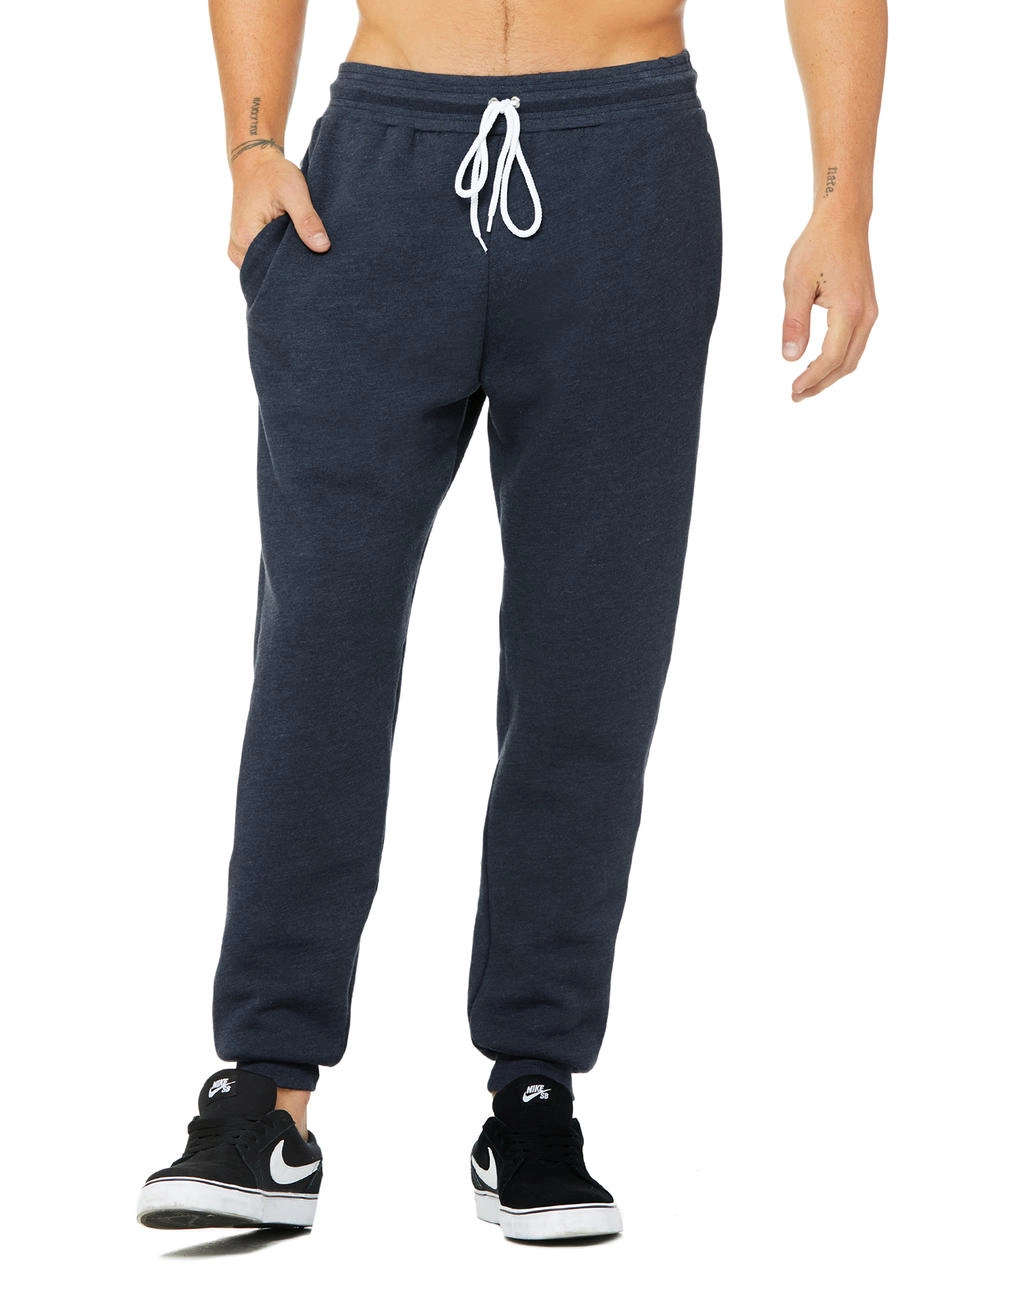 Unisex Jogger Sweatpants zum Besticken und Bedrucken in der Farbe Heather Navy mit Ihren Logo, Schriftzug oder Motiv.